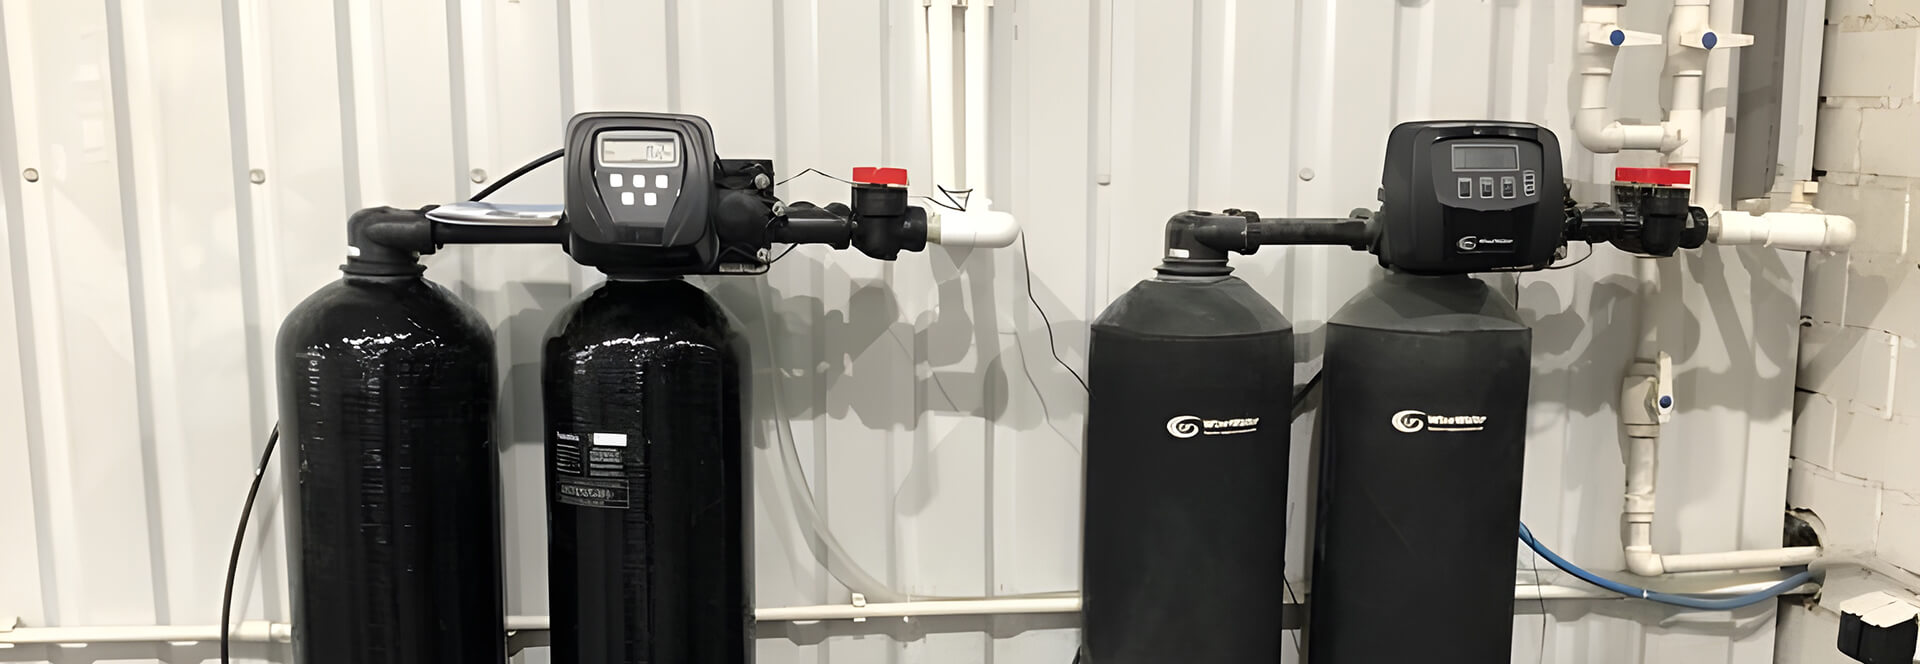 Системы очистки воды, водоподготовка и фильтры для воды с установкой